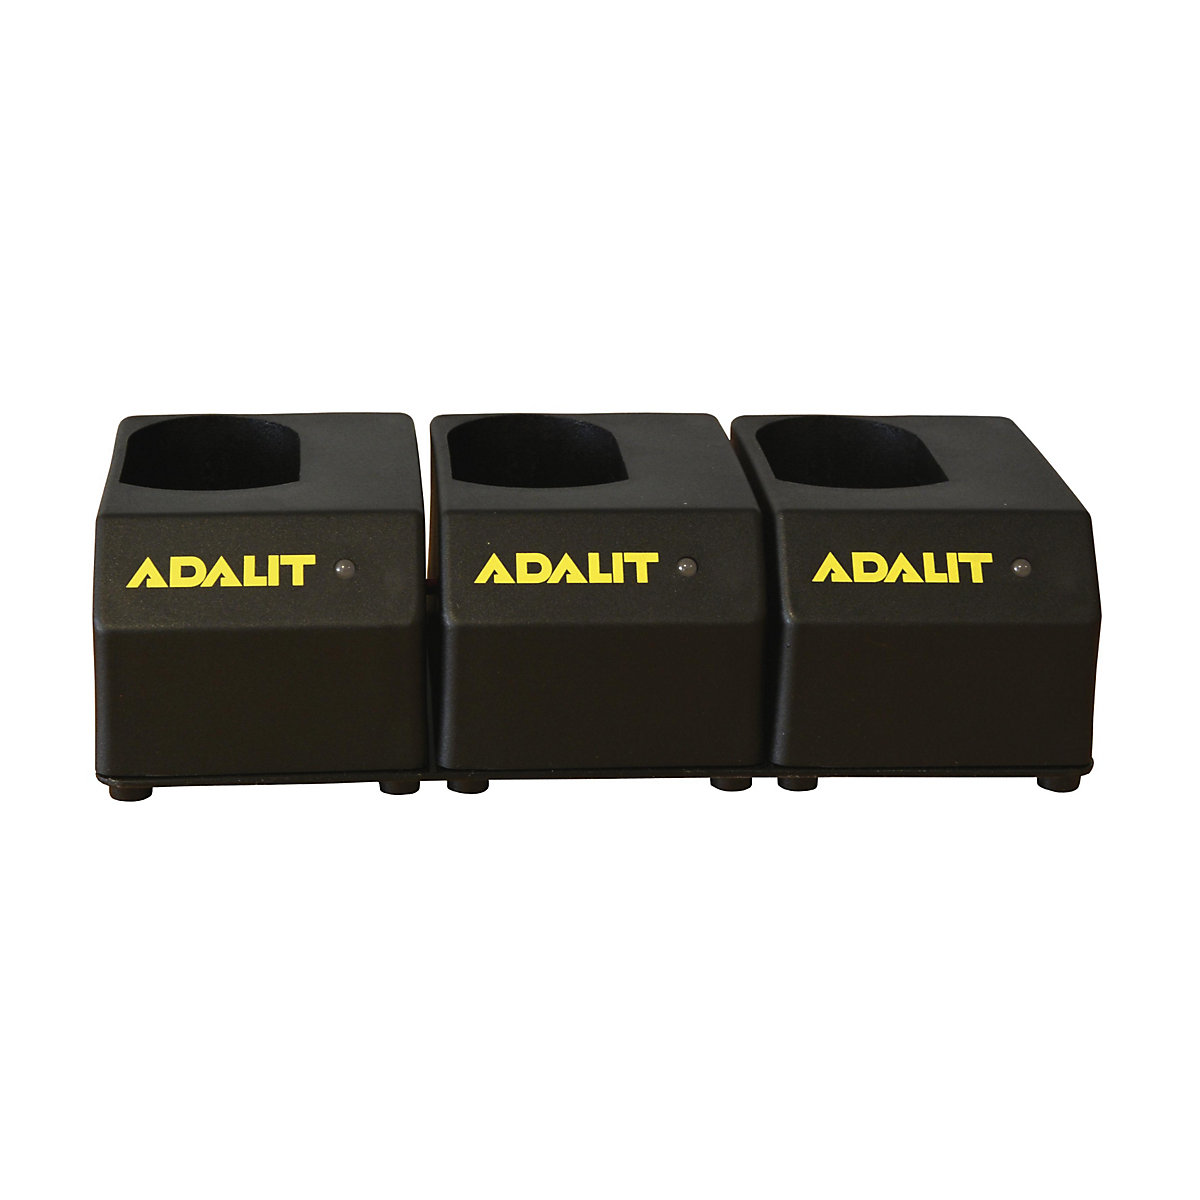 Töltőkészülék ADALIT® kézi lámpákhoz, lítium-ion akkumulátorokhoz, 3 db LED-es biztonsági lámpához-8